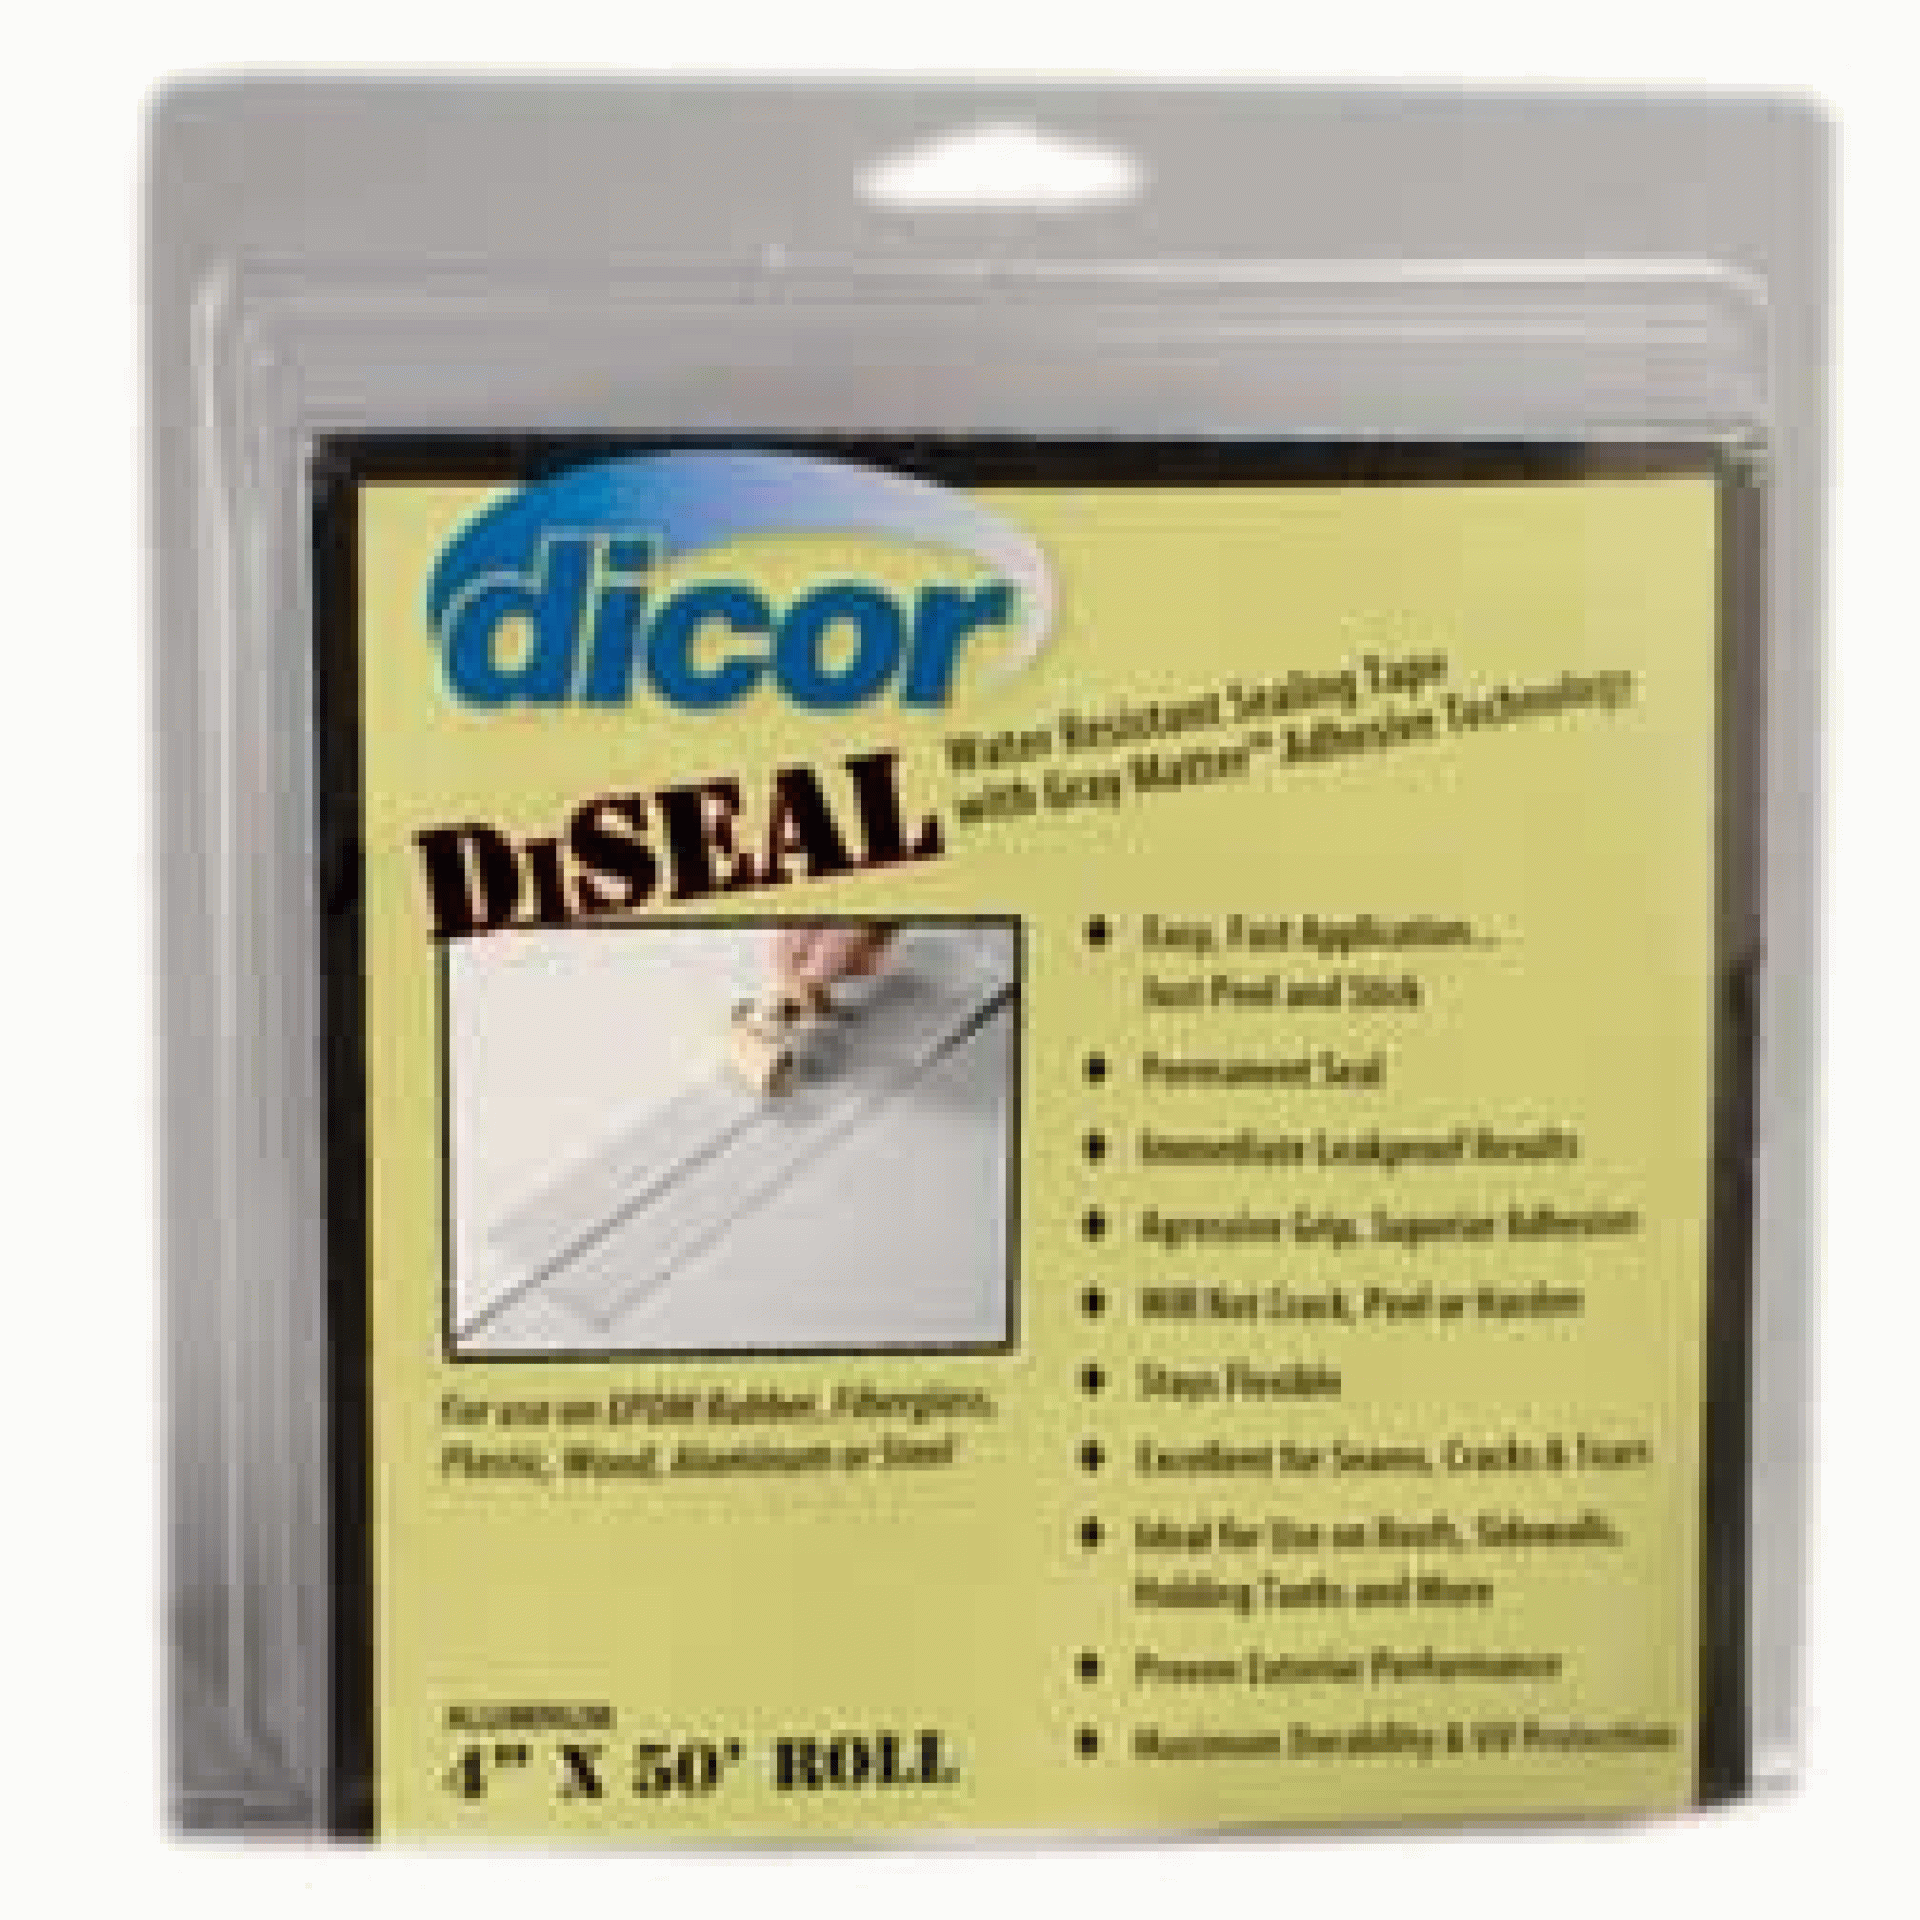 DICOR CORP. | 522TPO-450-1C | TAPE SEALING DISEAL 4" x 50' ROLL